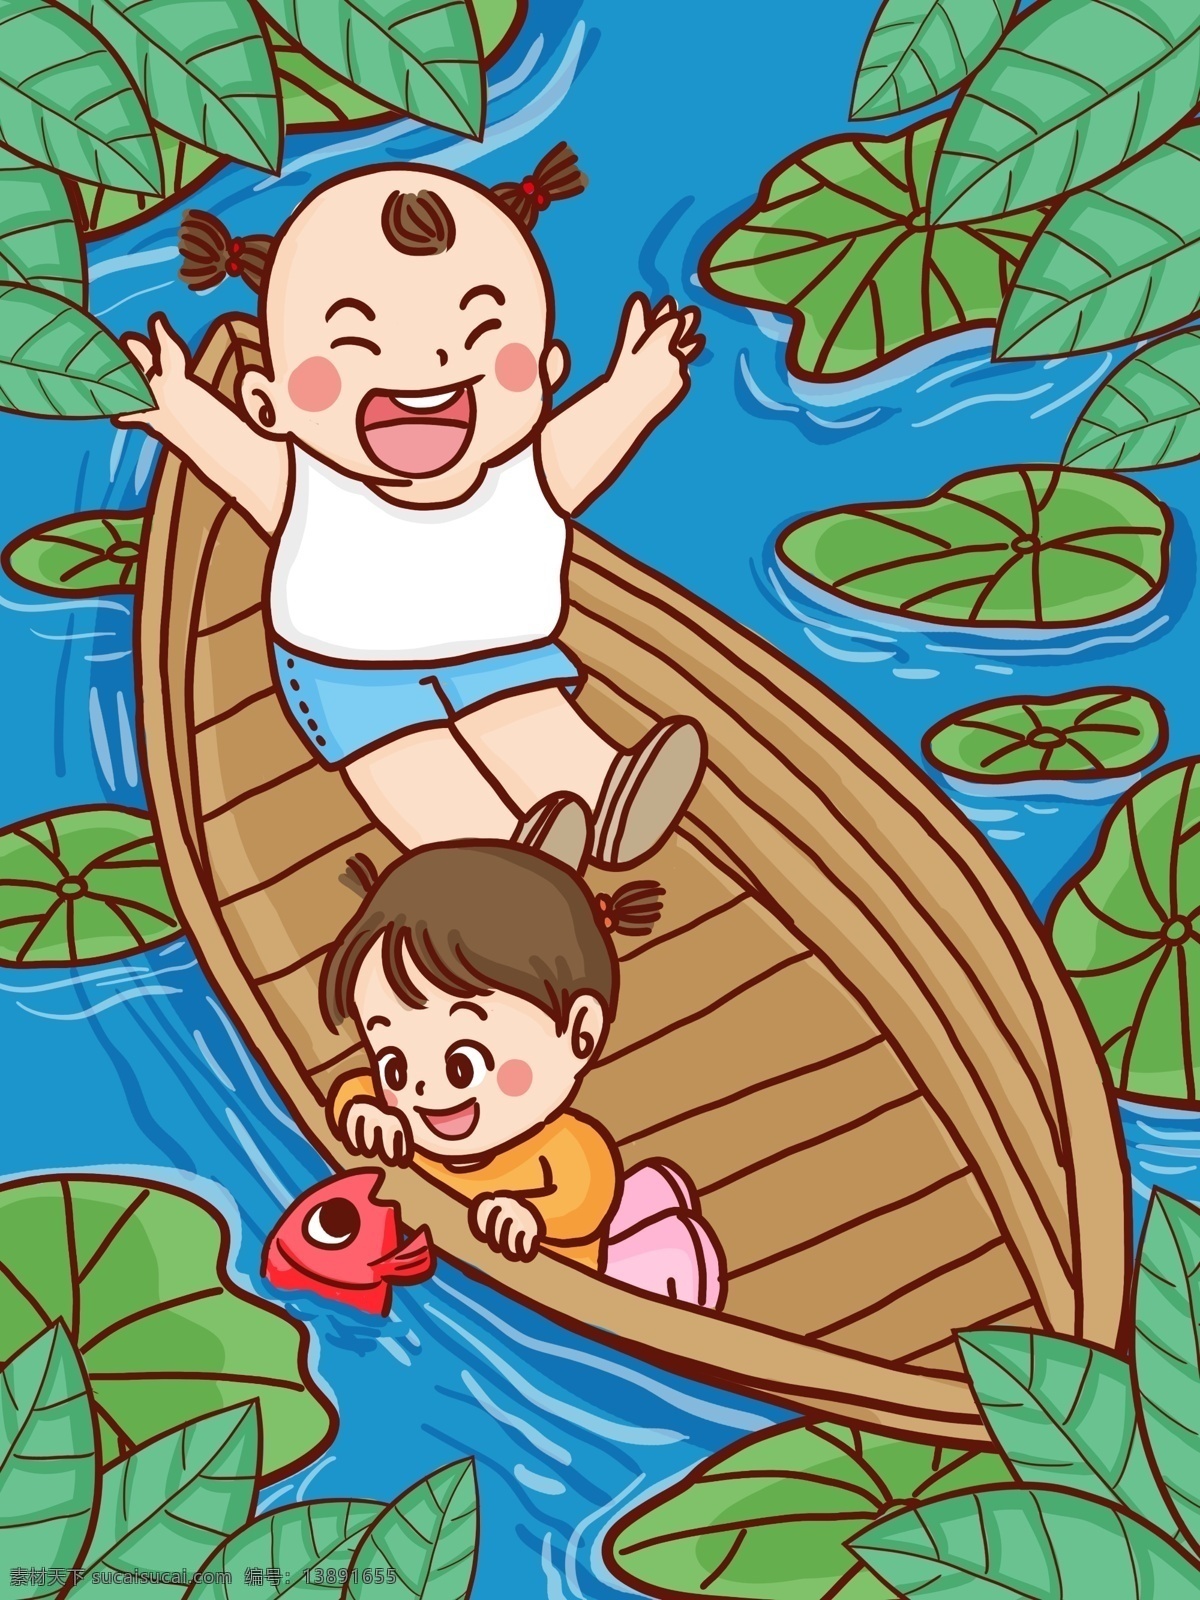 二十四节气 夏至 两个 孩童 游船 手绘 原创 插画 节气 游玩 鱼 荷叶 荷花 夏天 卡通